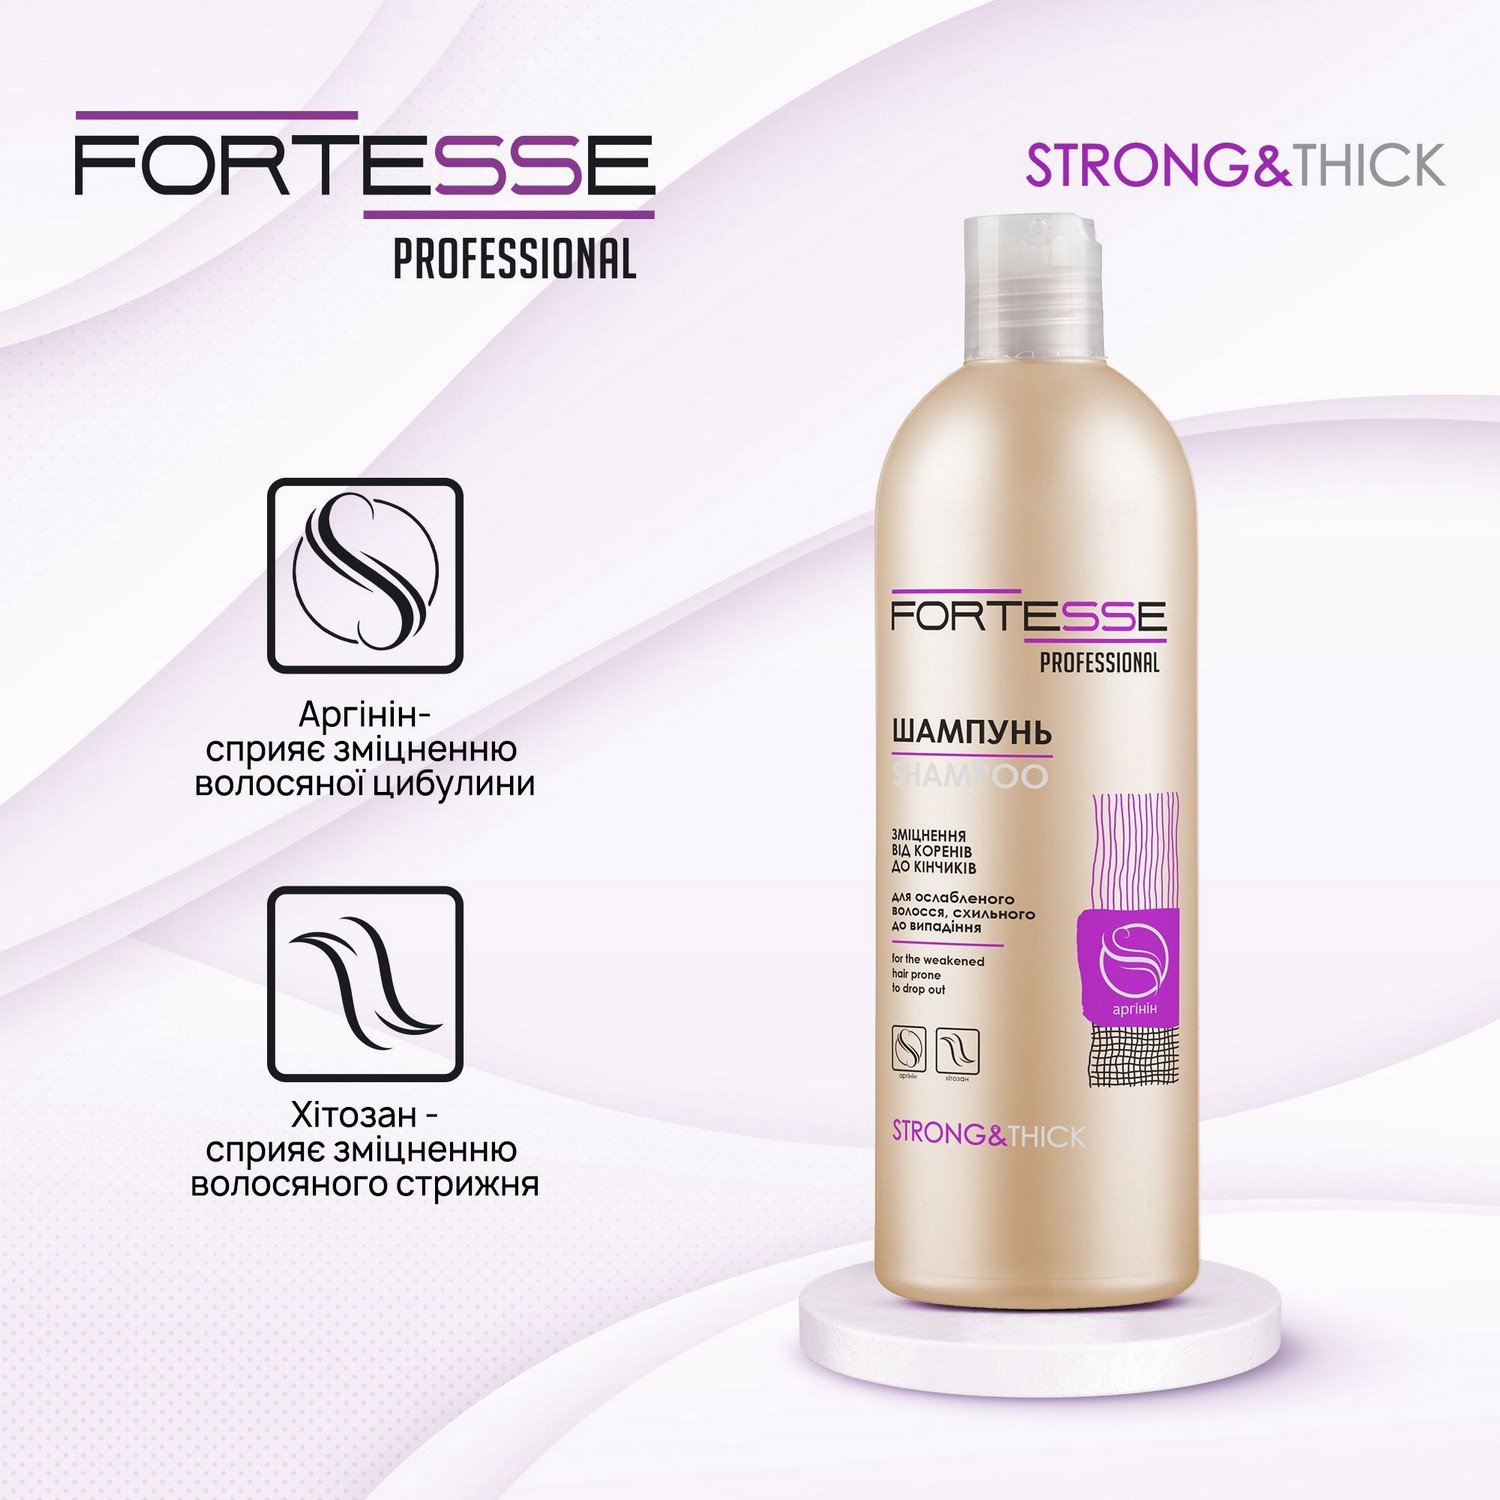 Зміцнюючий шампунь Fortesse Professional Strong&Thick для ослабленого волосся, схильного до випадіння, 400 мл - фото 5